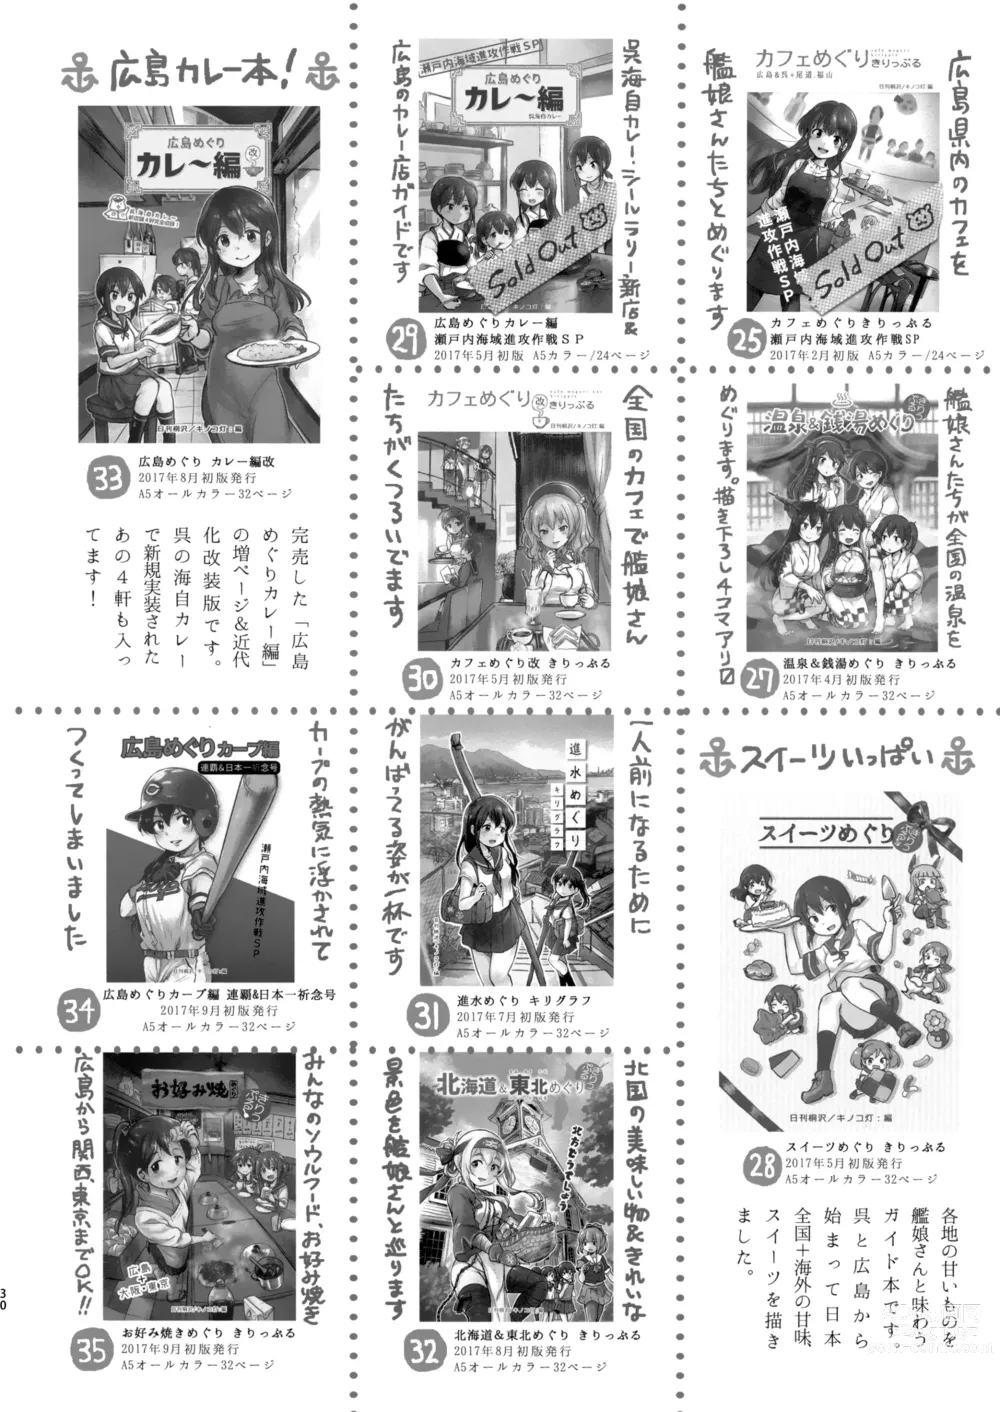 Page 29 of doujinshi Jingei-chan to Mitsugetsu Onsen Tabi no Yado